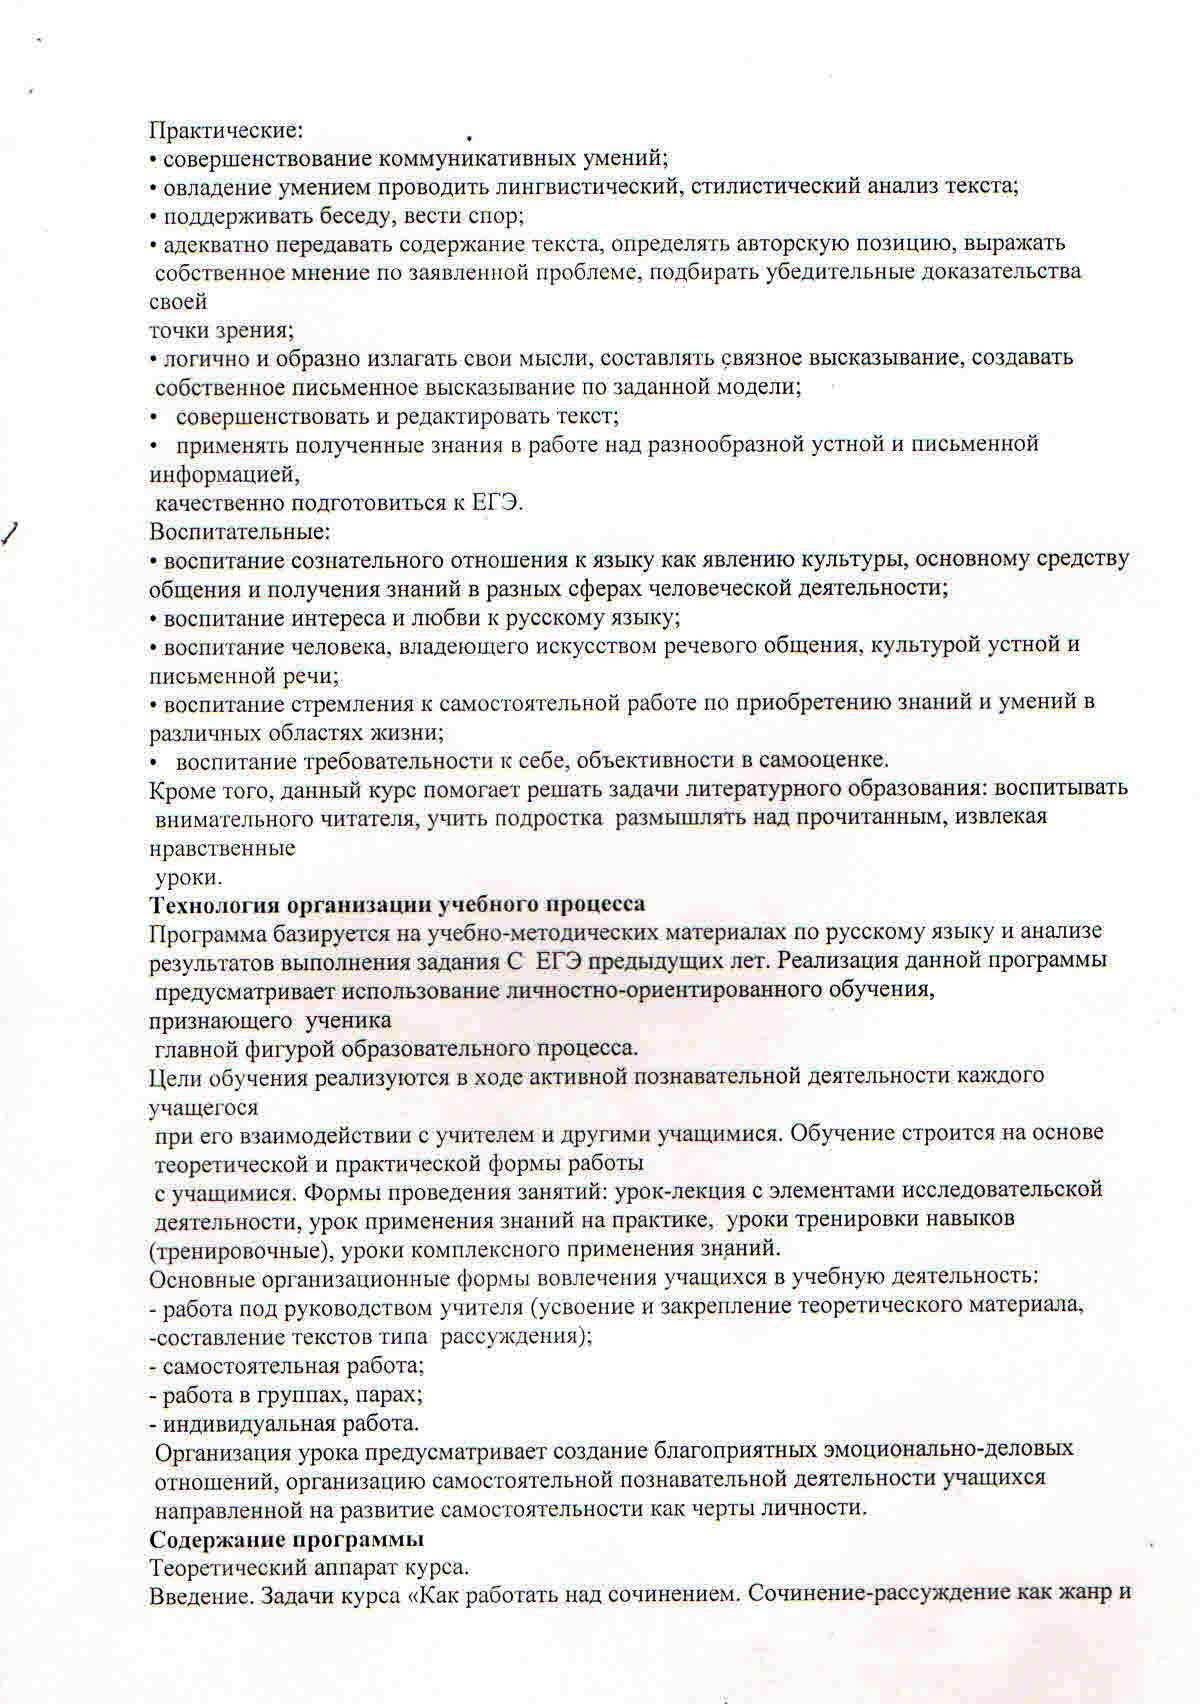 Программа факультативного курса по русскому языку Учимся писать рецензию, 11 класс